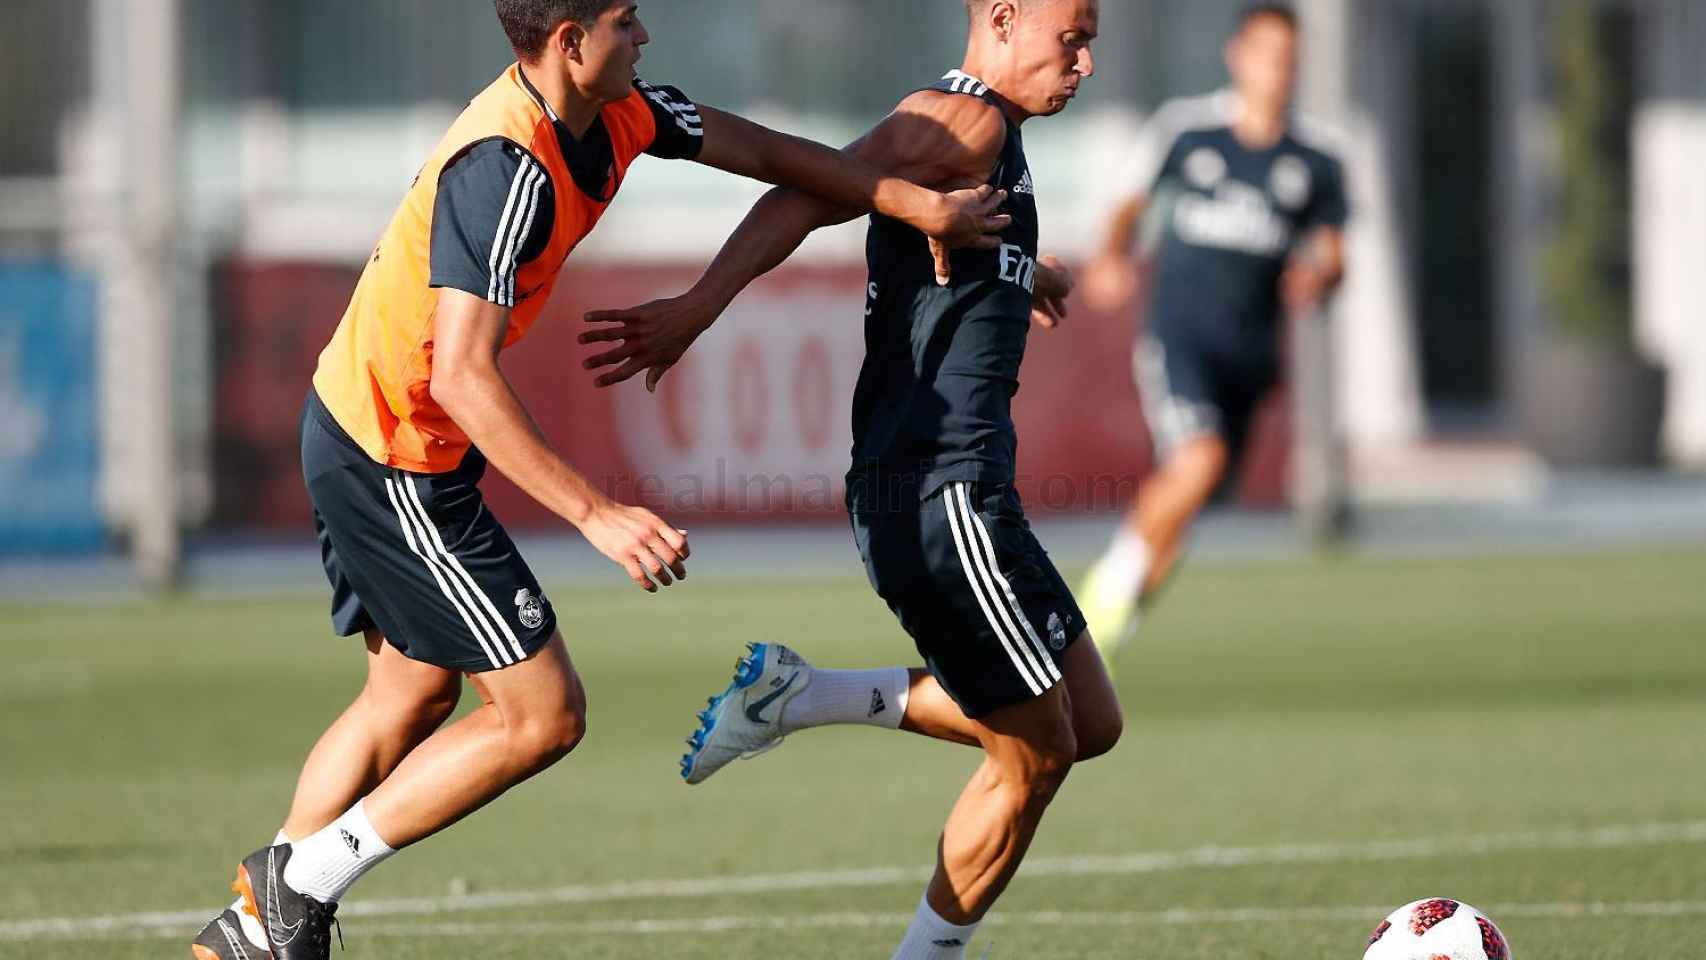 Jaume pelea un balón a Marcos Llorente durante un entrenamiento con el Real Madrid